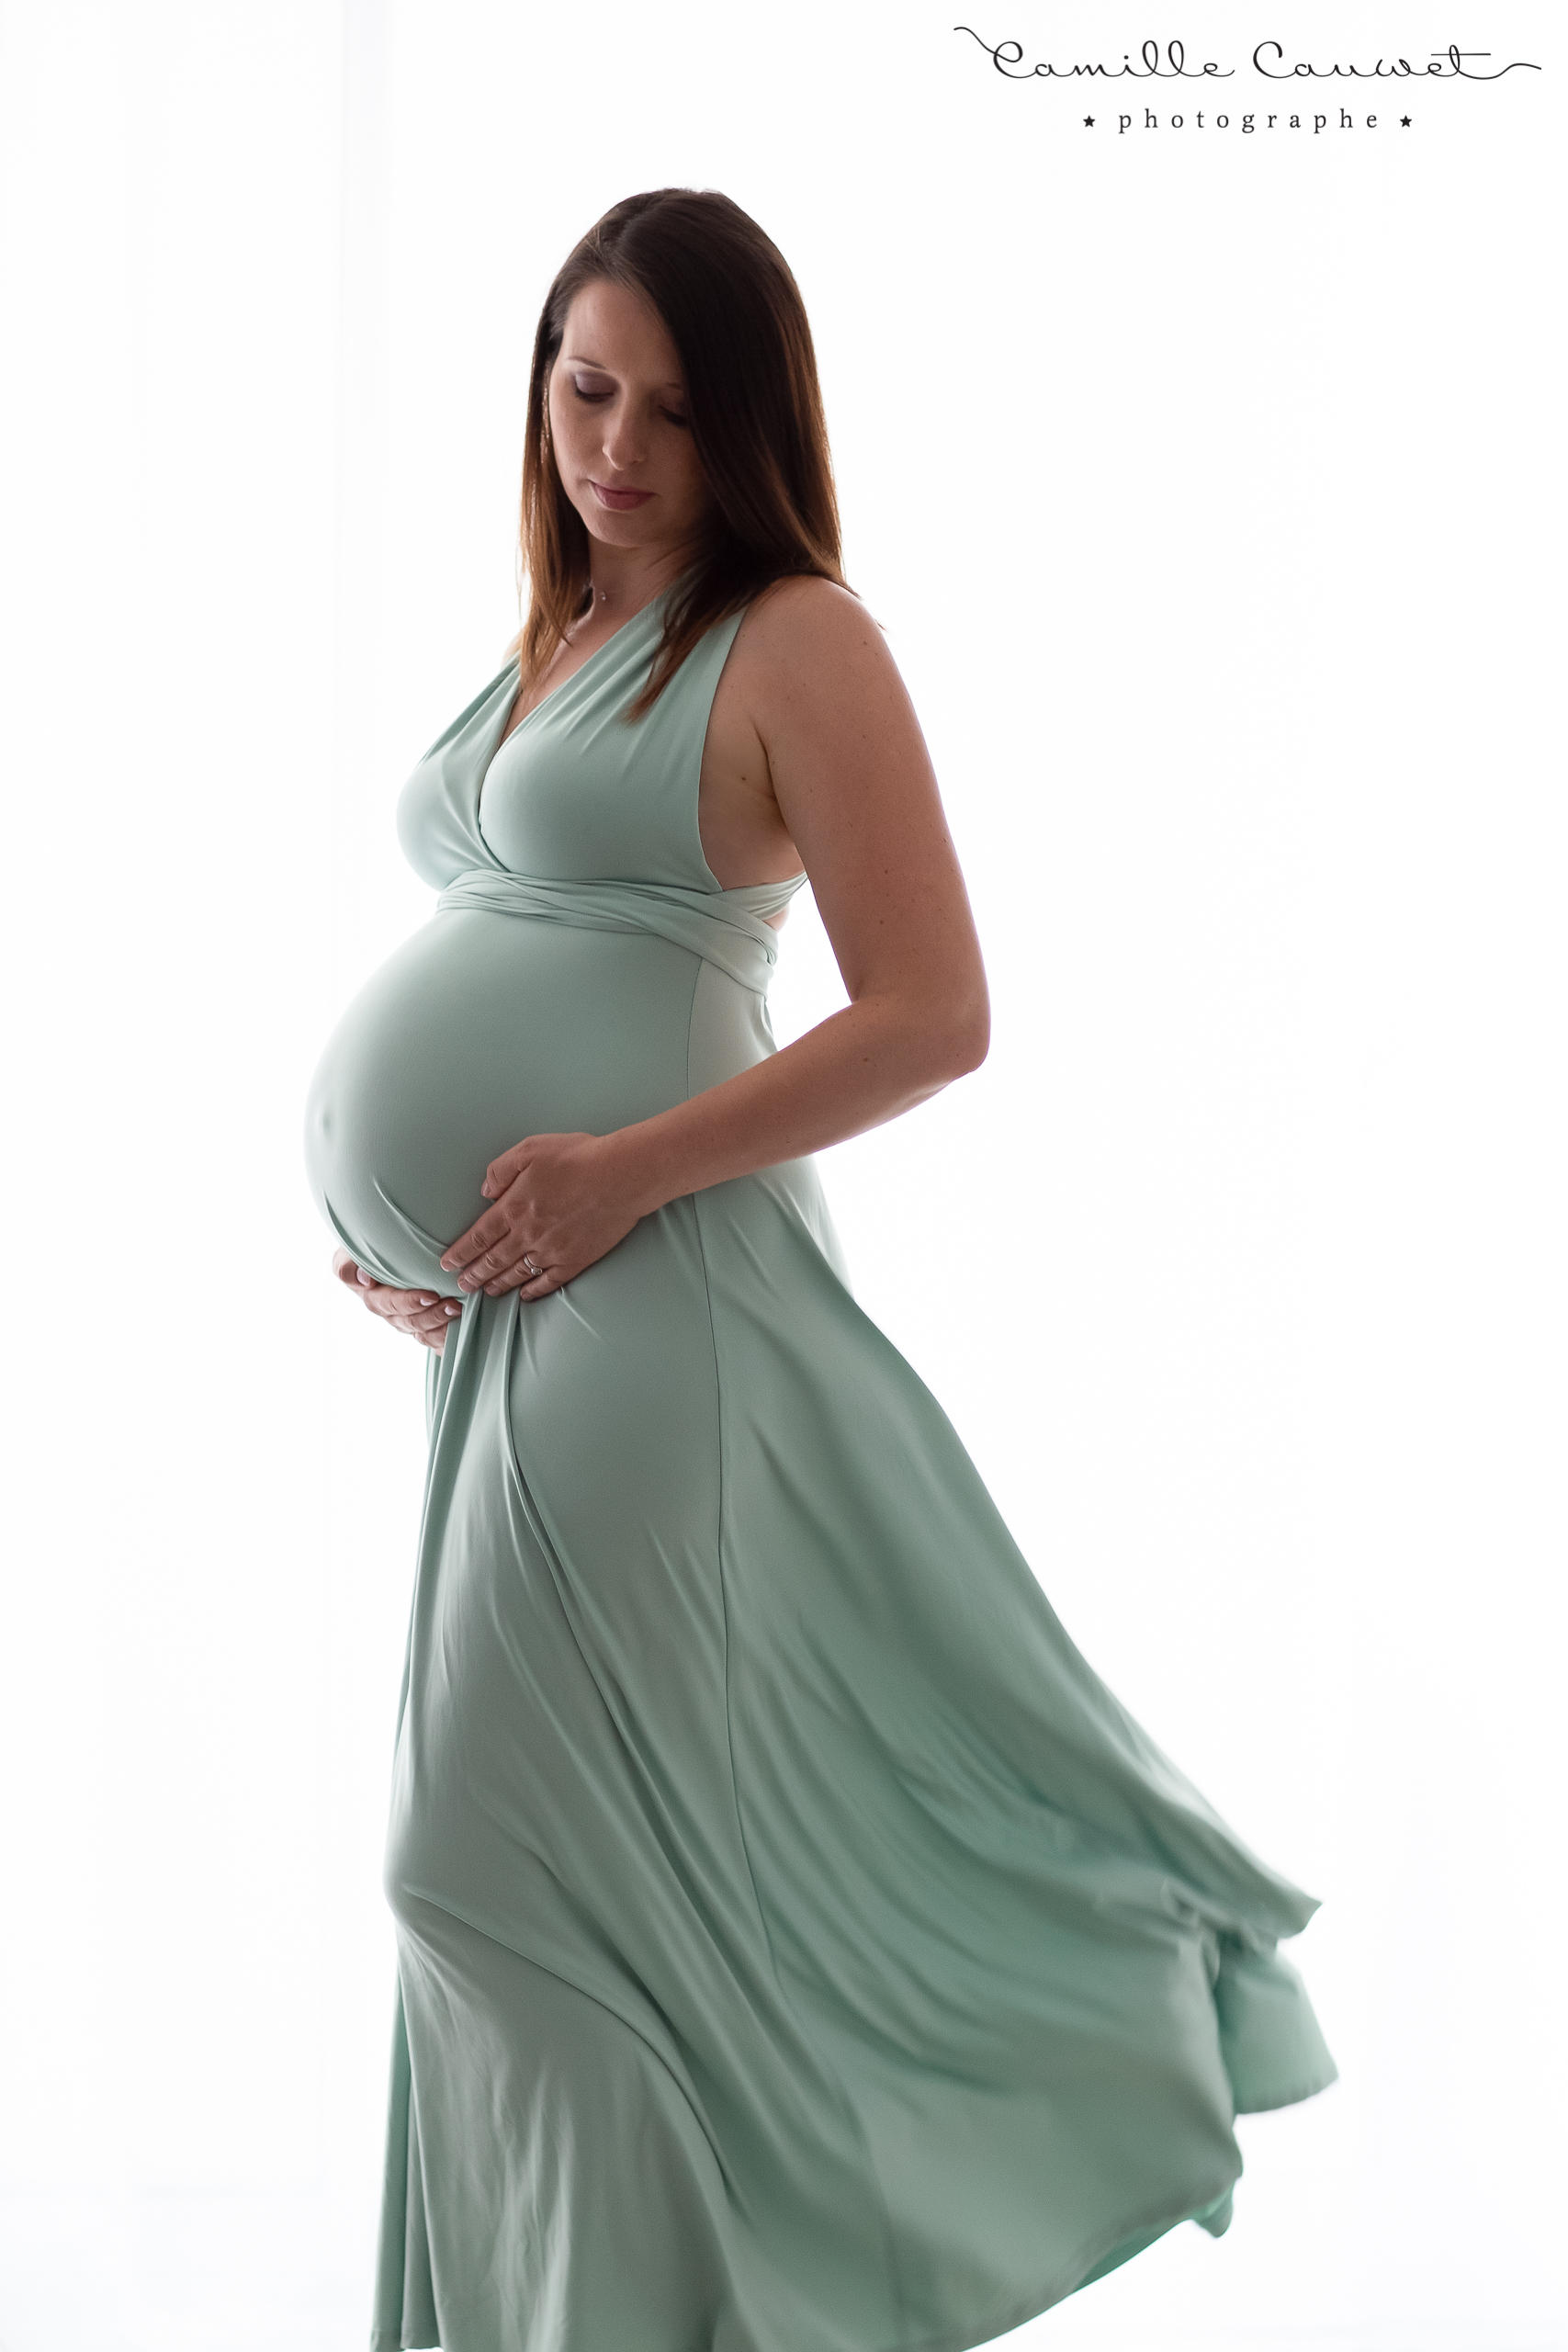 femme enceinte en robe verte